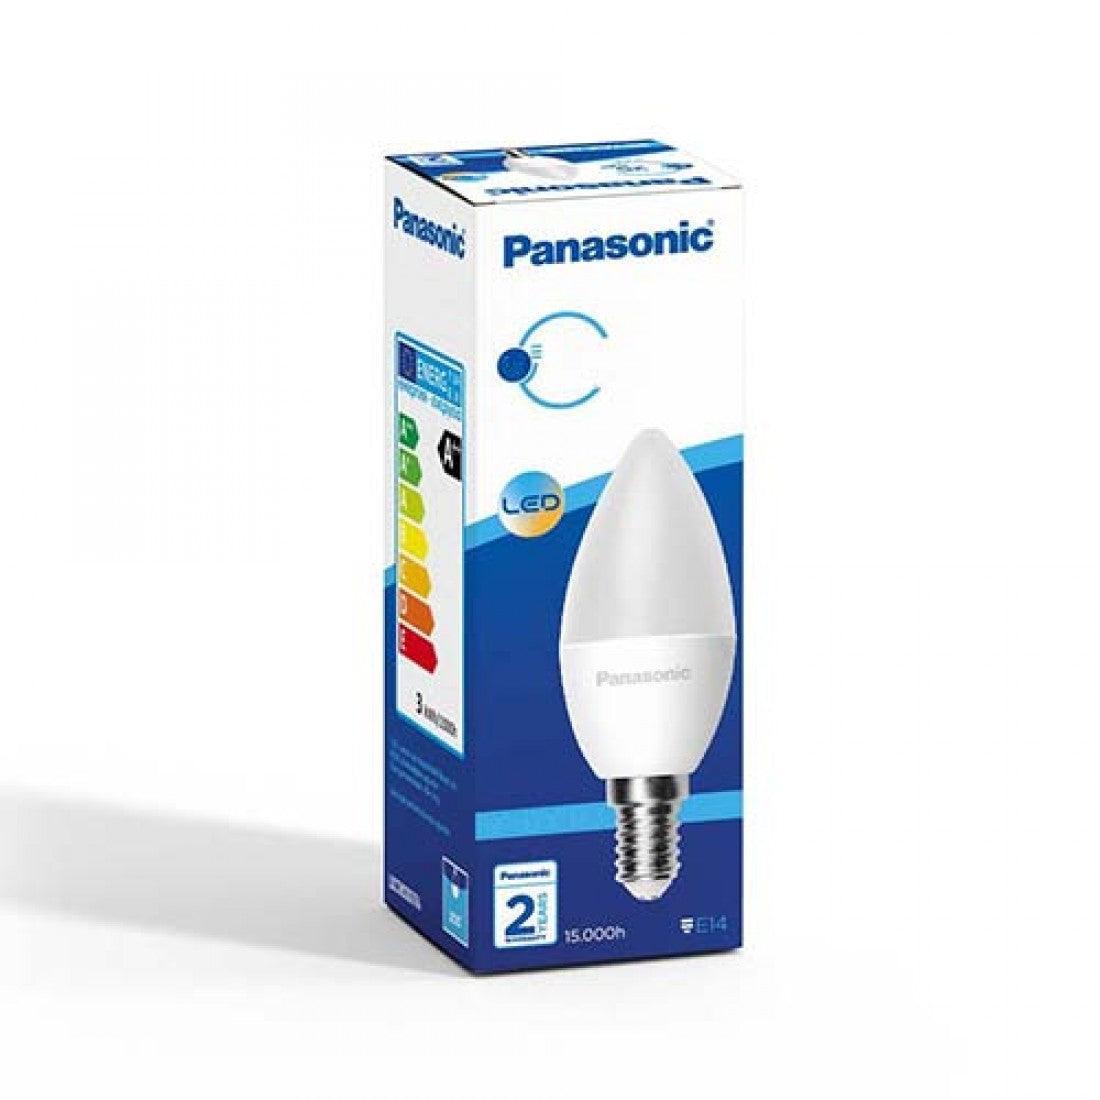 Panasonic Led Ampul 5W E14 Sarı Işık - Panasonic